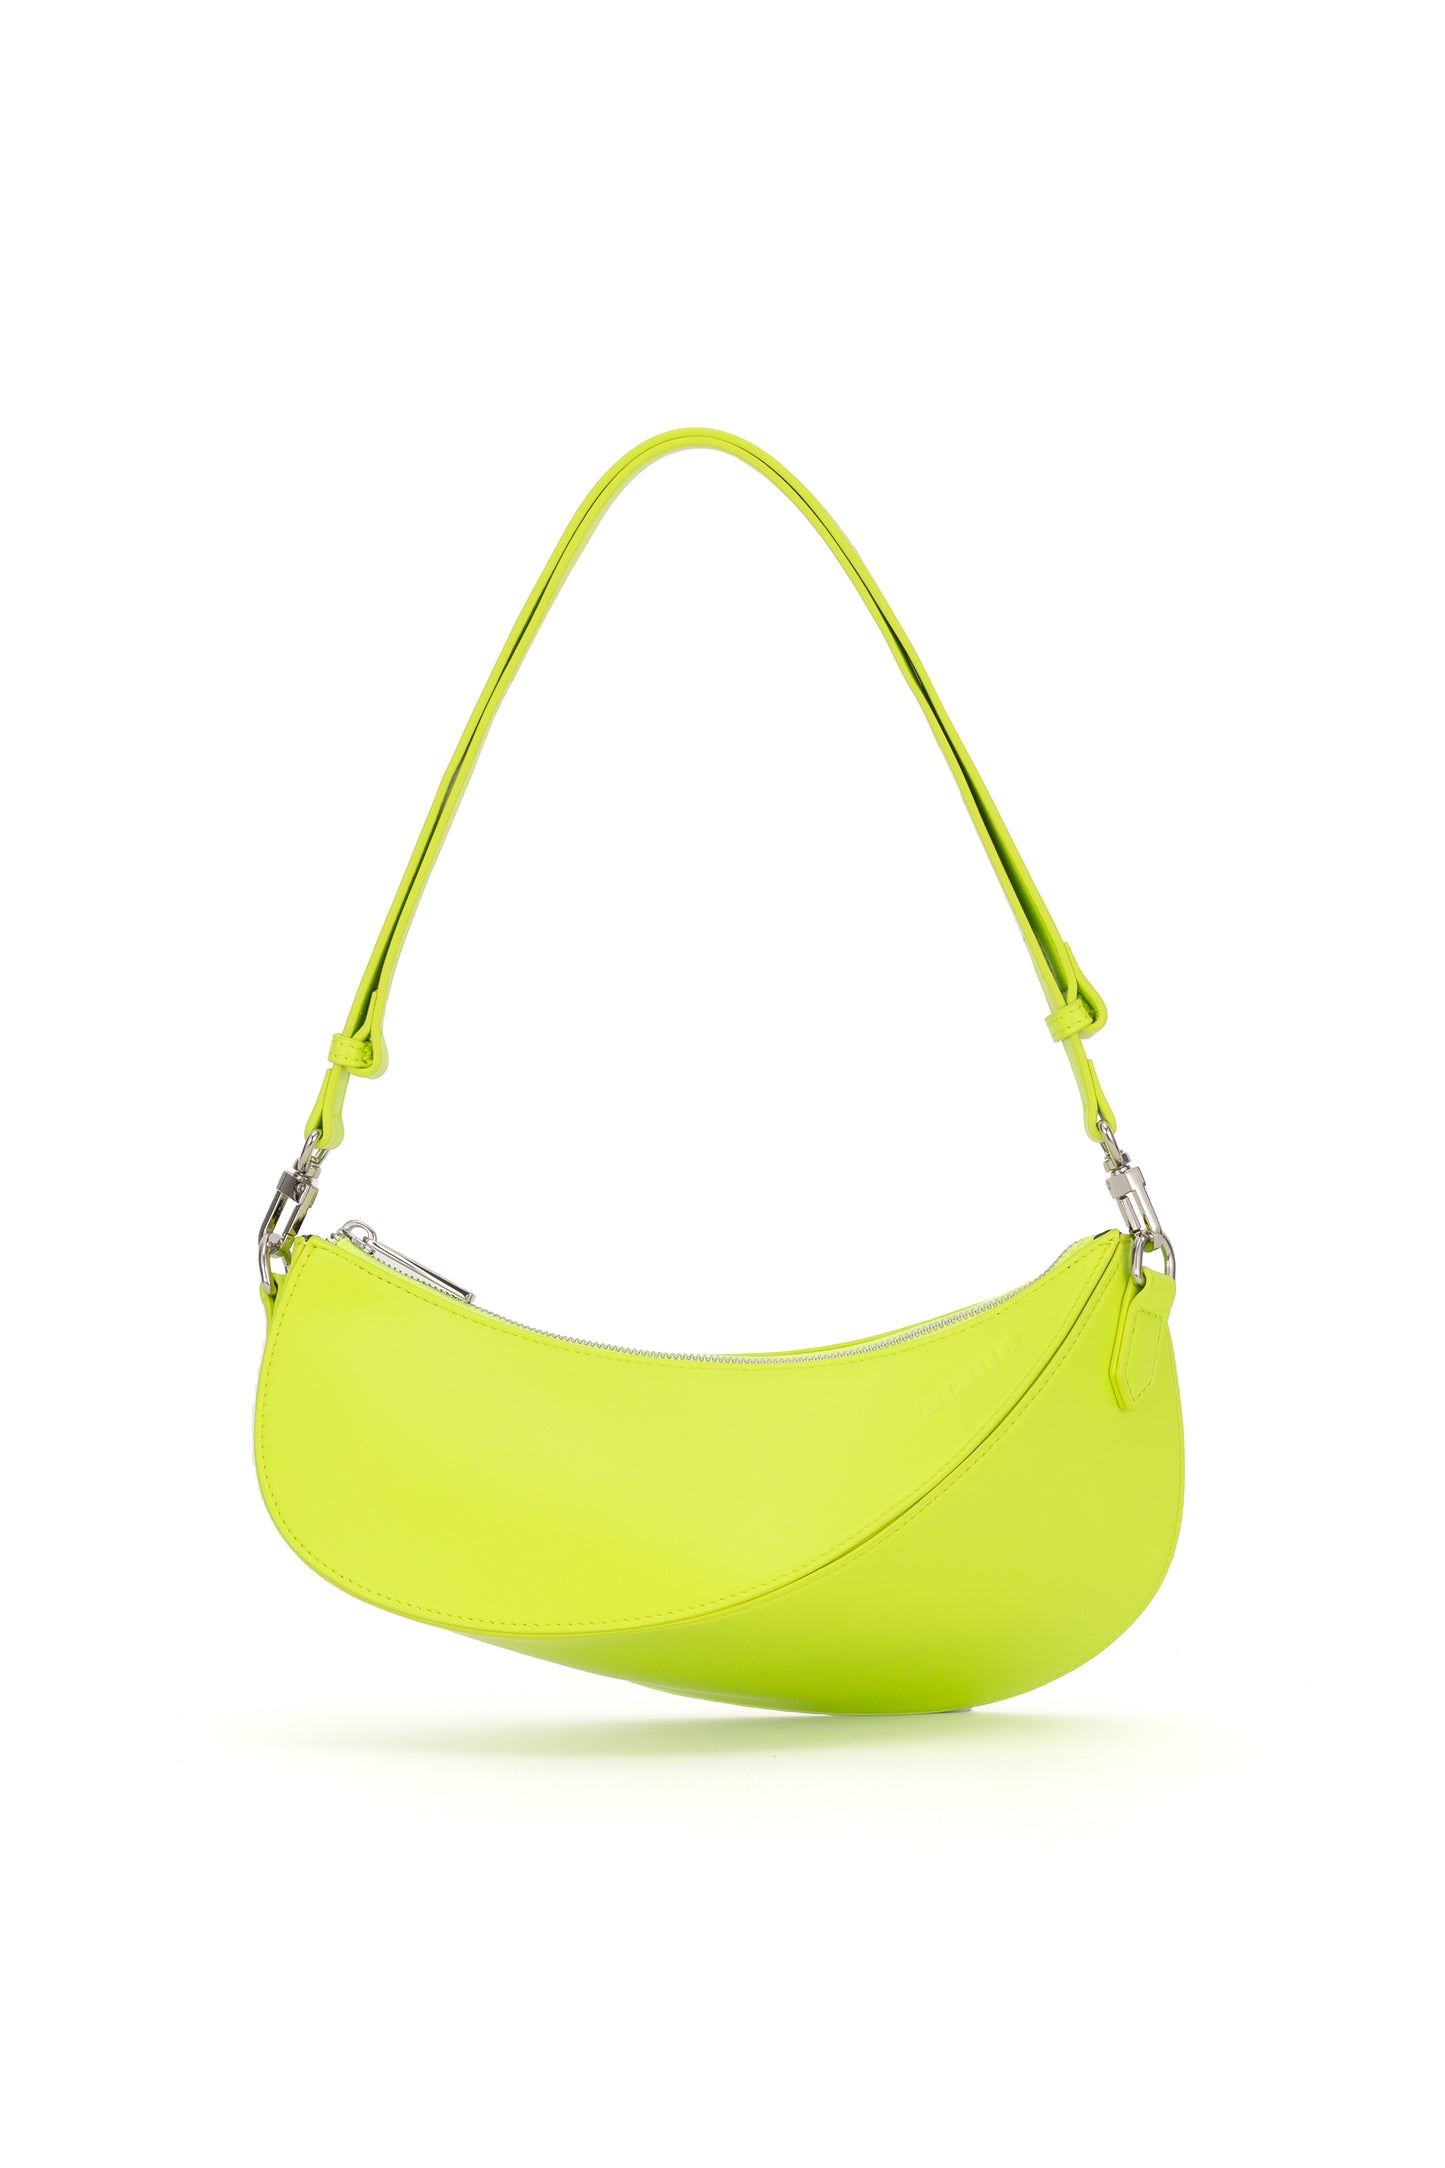 Asymmetrical Shoulder/Sling Bag in Chartreuse